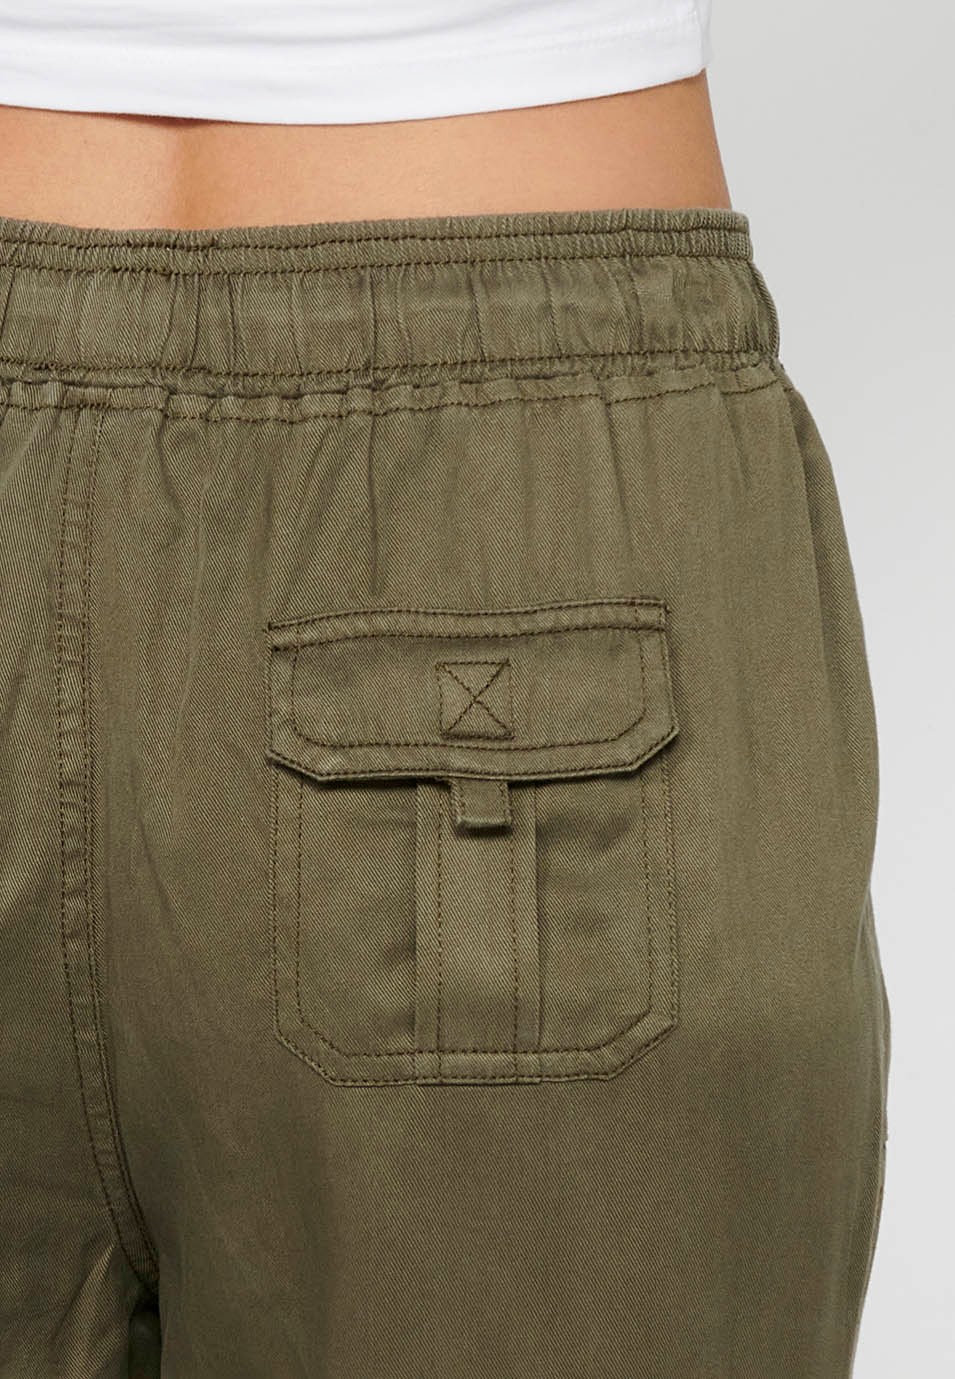 Pantalon de jogging long avec finition bouclée et taille caoutchoutée avec quatre poches, deux poches arrière à rabat de couleur Kaki pour femme 7